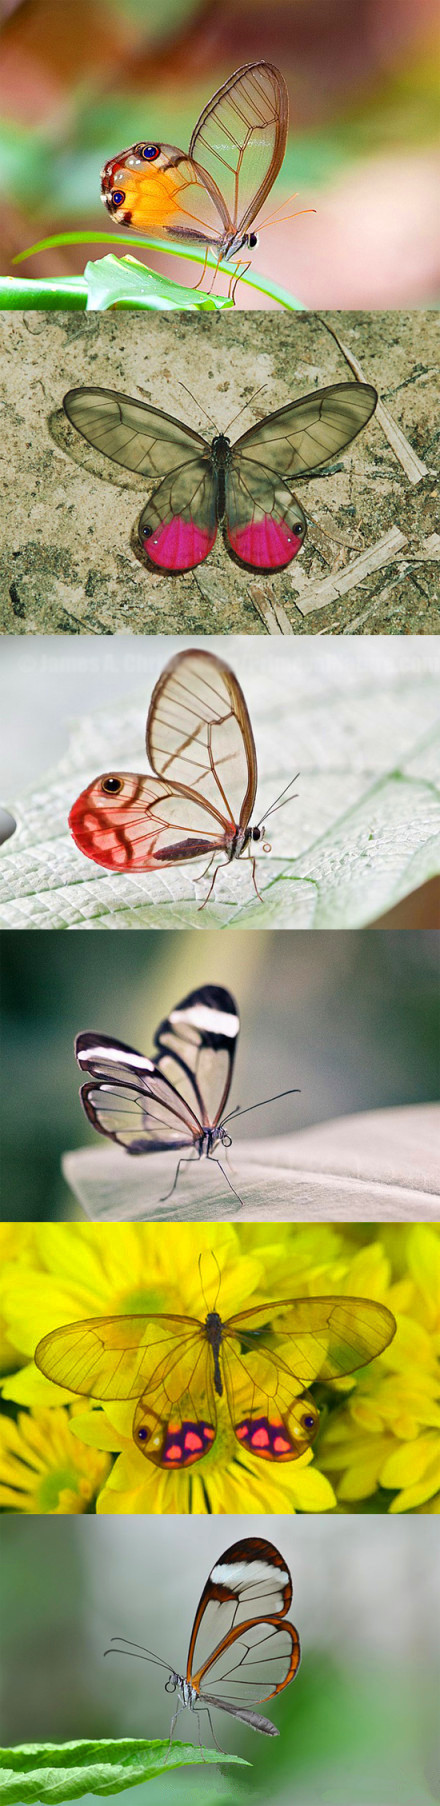 透明翅膀的蝴蝶